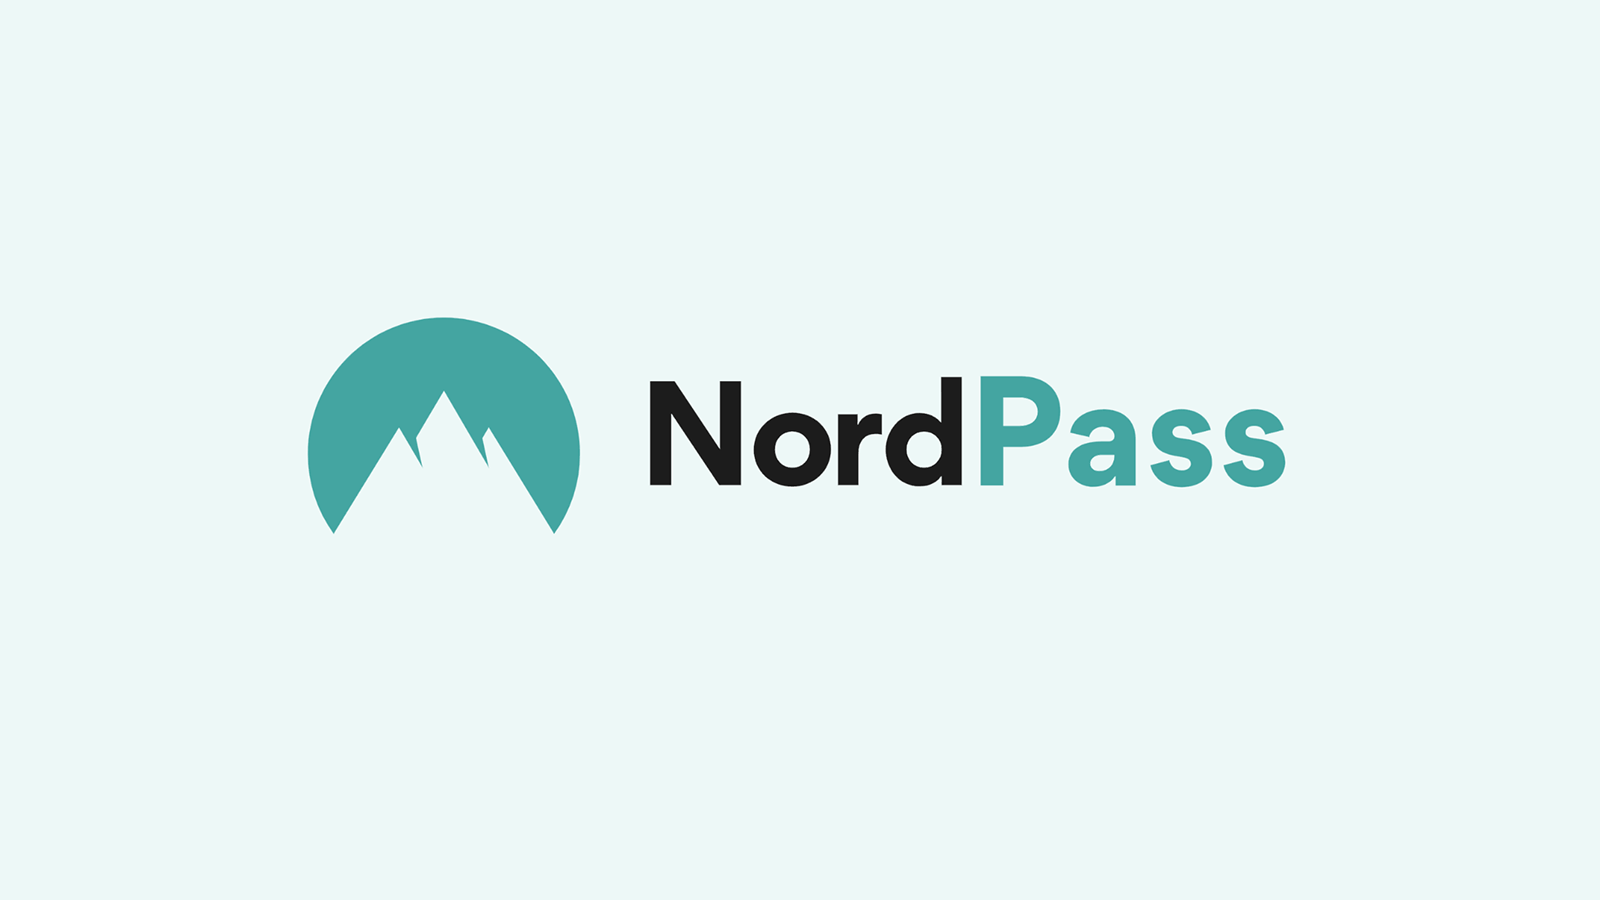 nordpass-logo-4780004